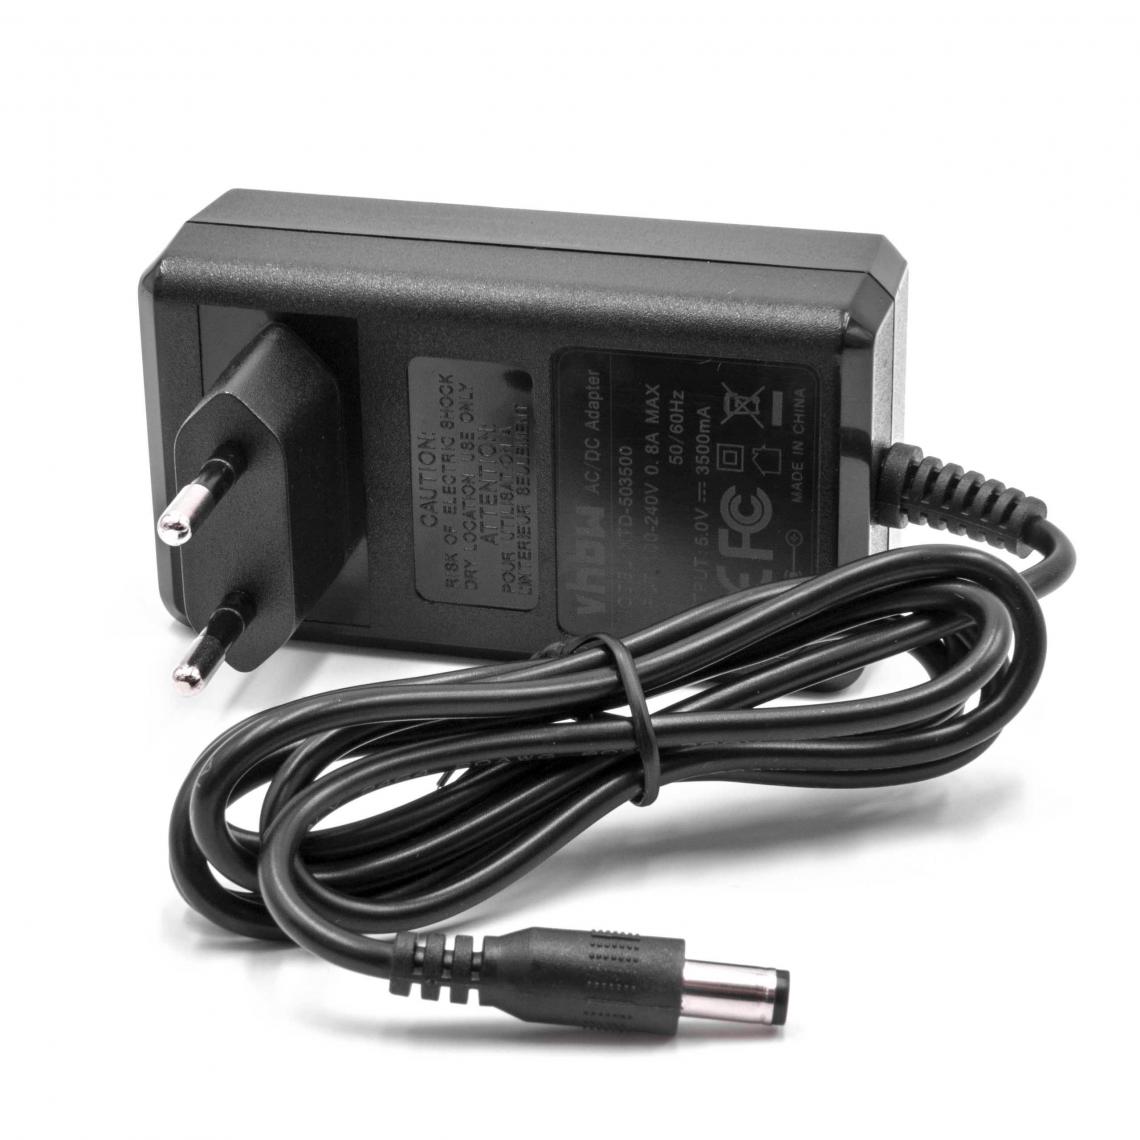 Vhbw - vhbw Chargeur câble d'alimentation remplace Compex 649022 pour électrostimulateur - Autre appareil de mesure